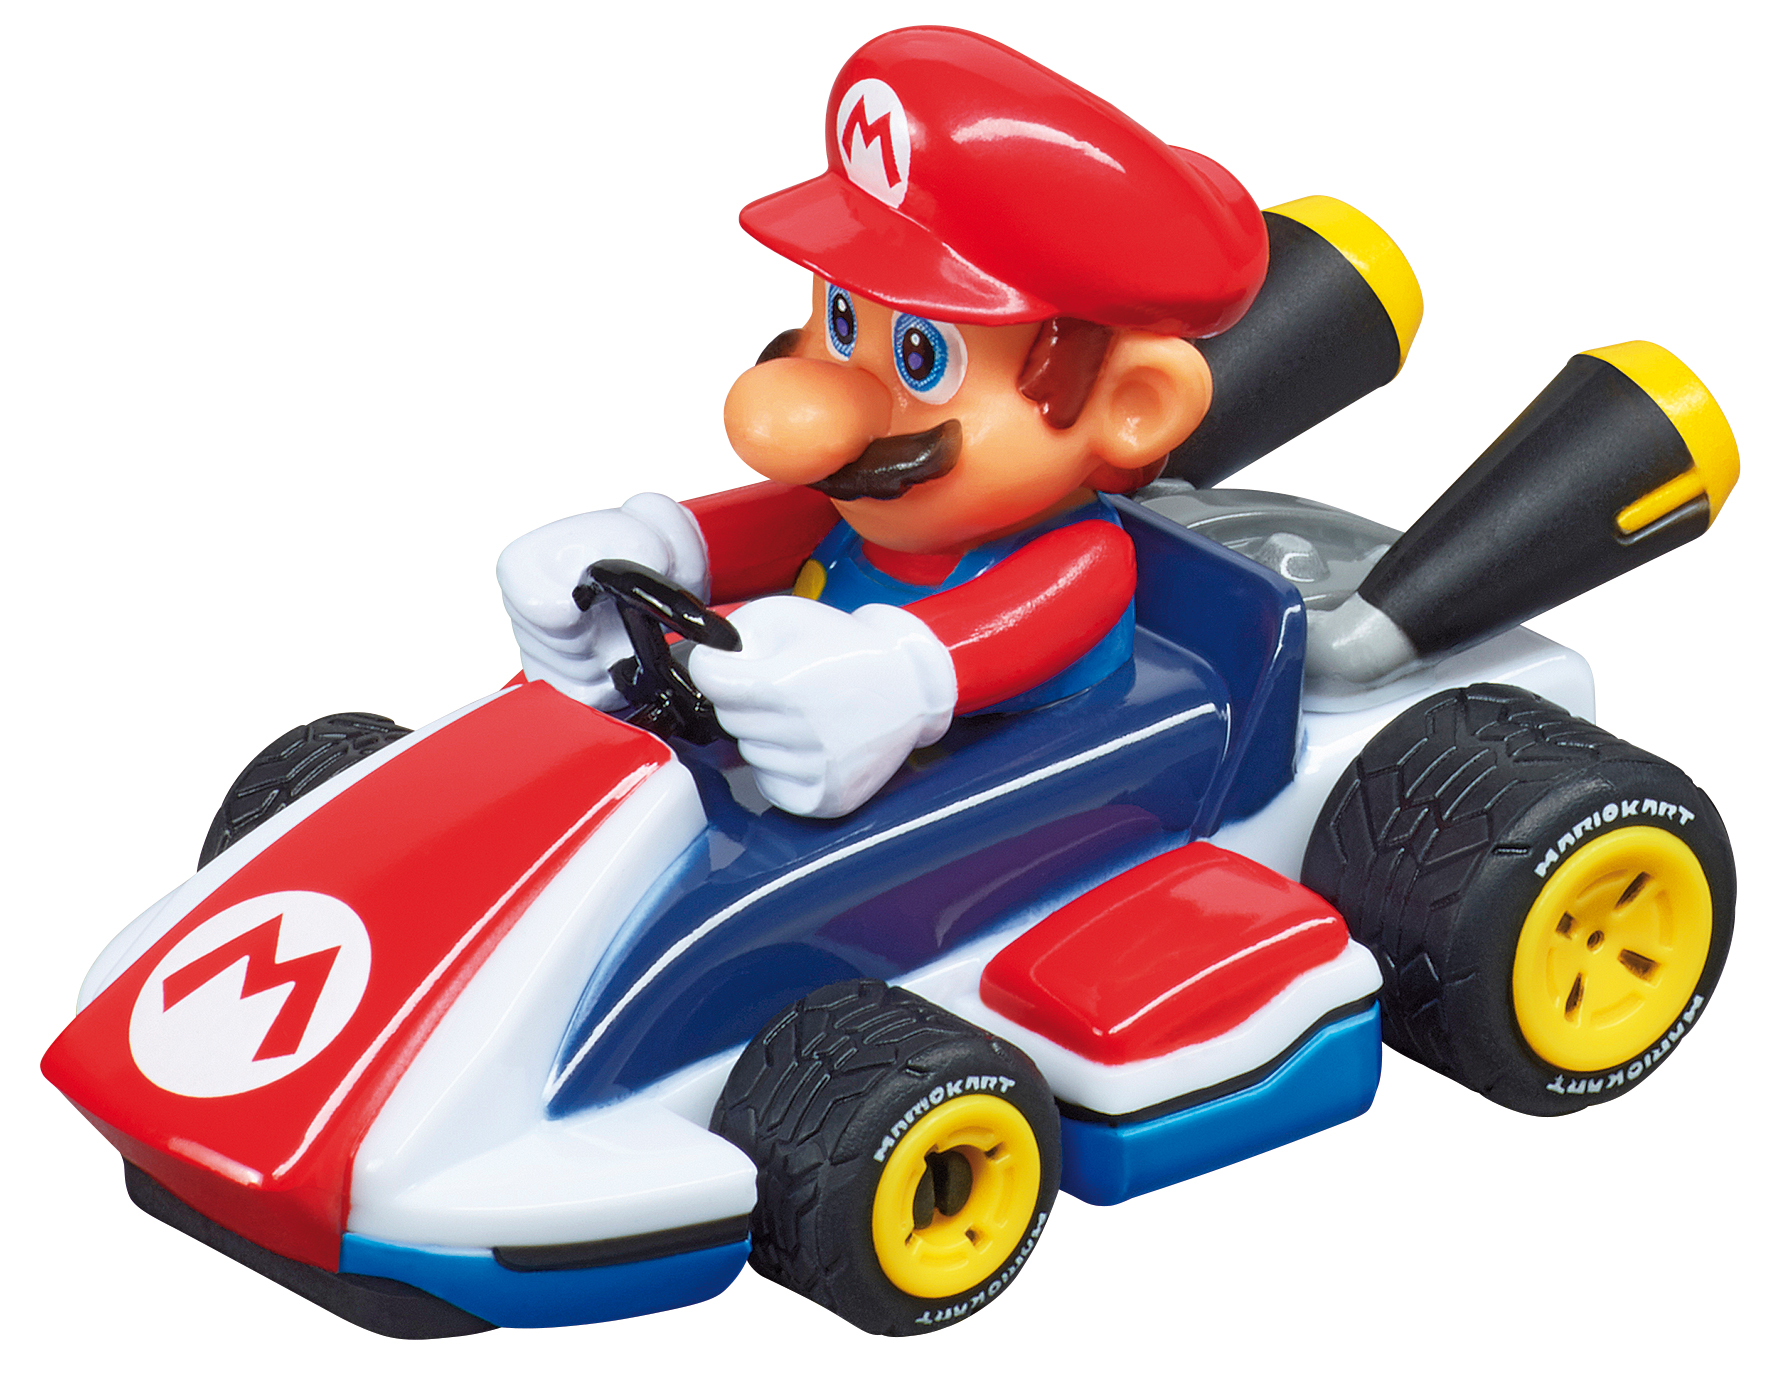 Carrera - First Racer - Nintendo Mario Kart - Mario (20065002)